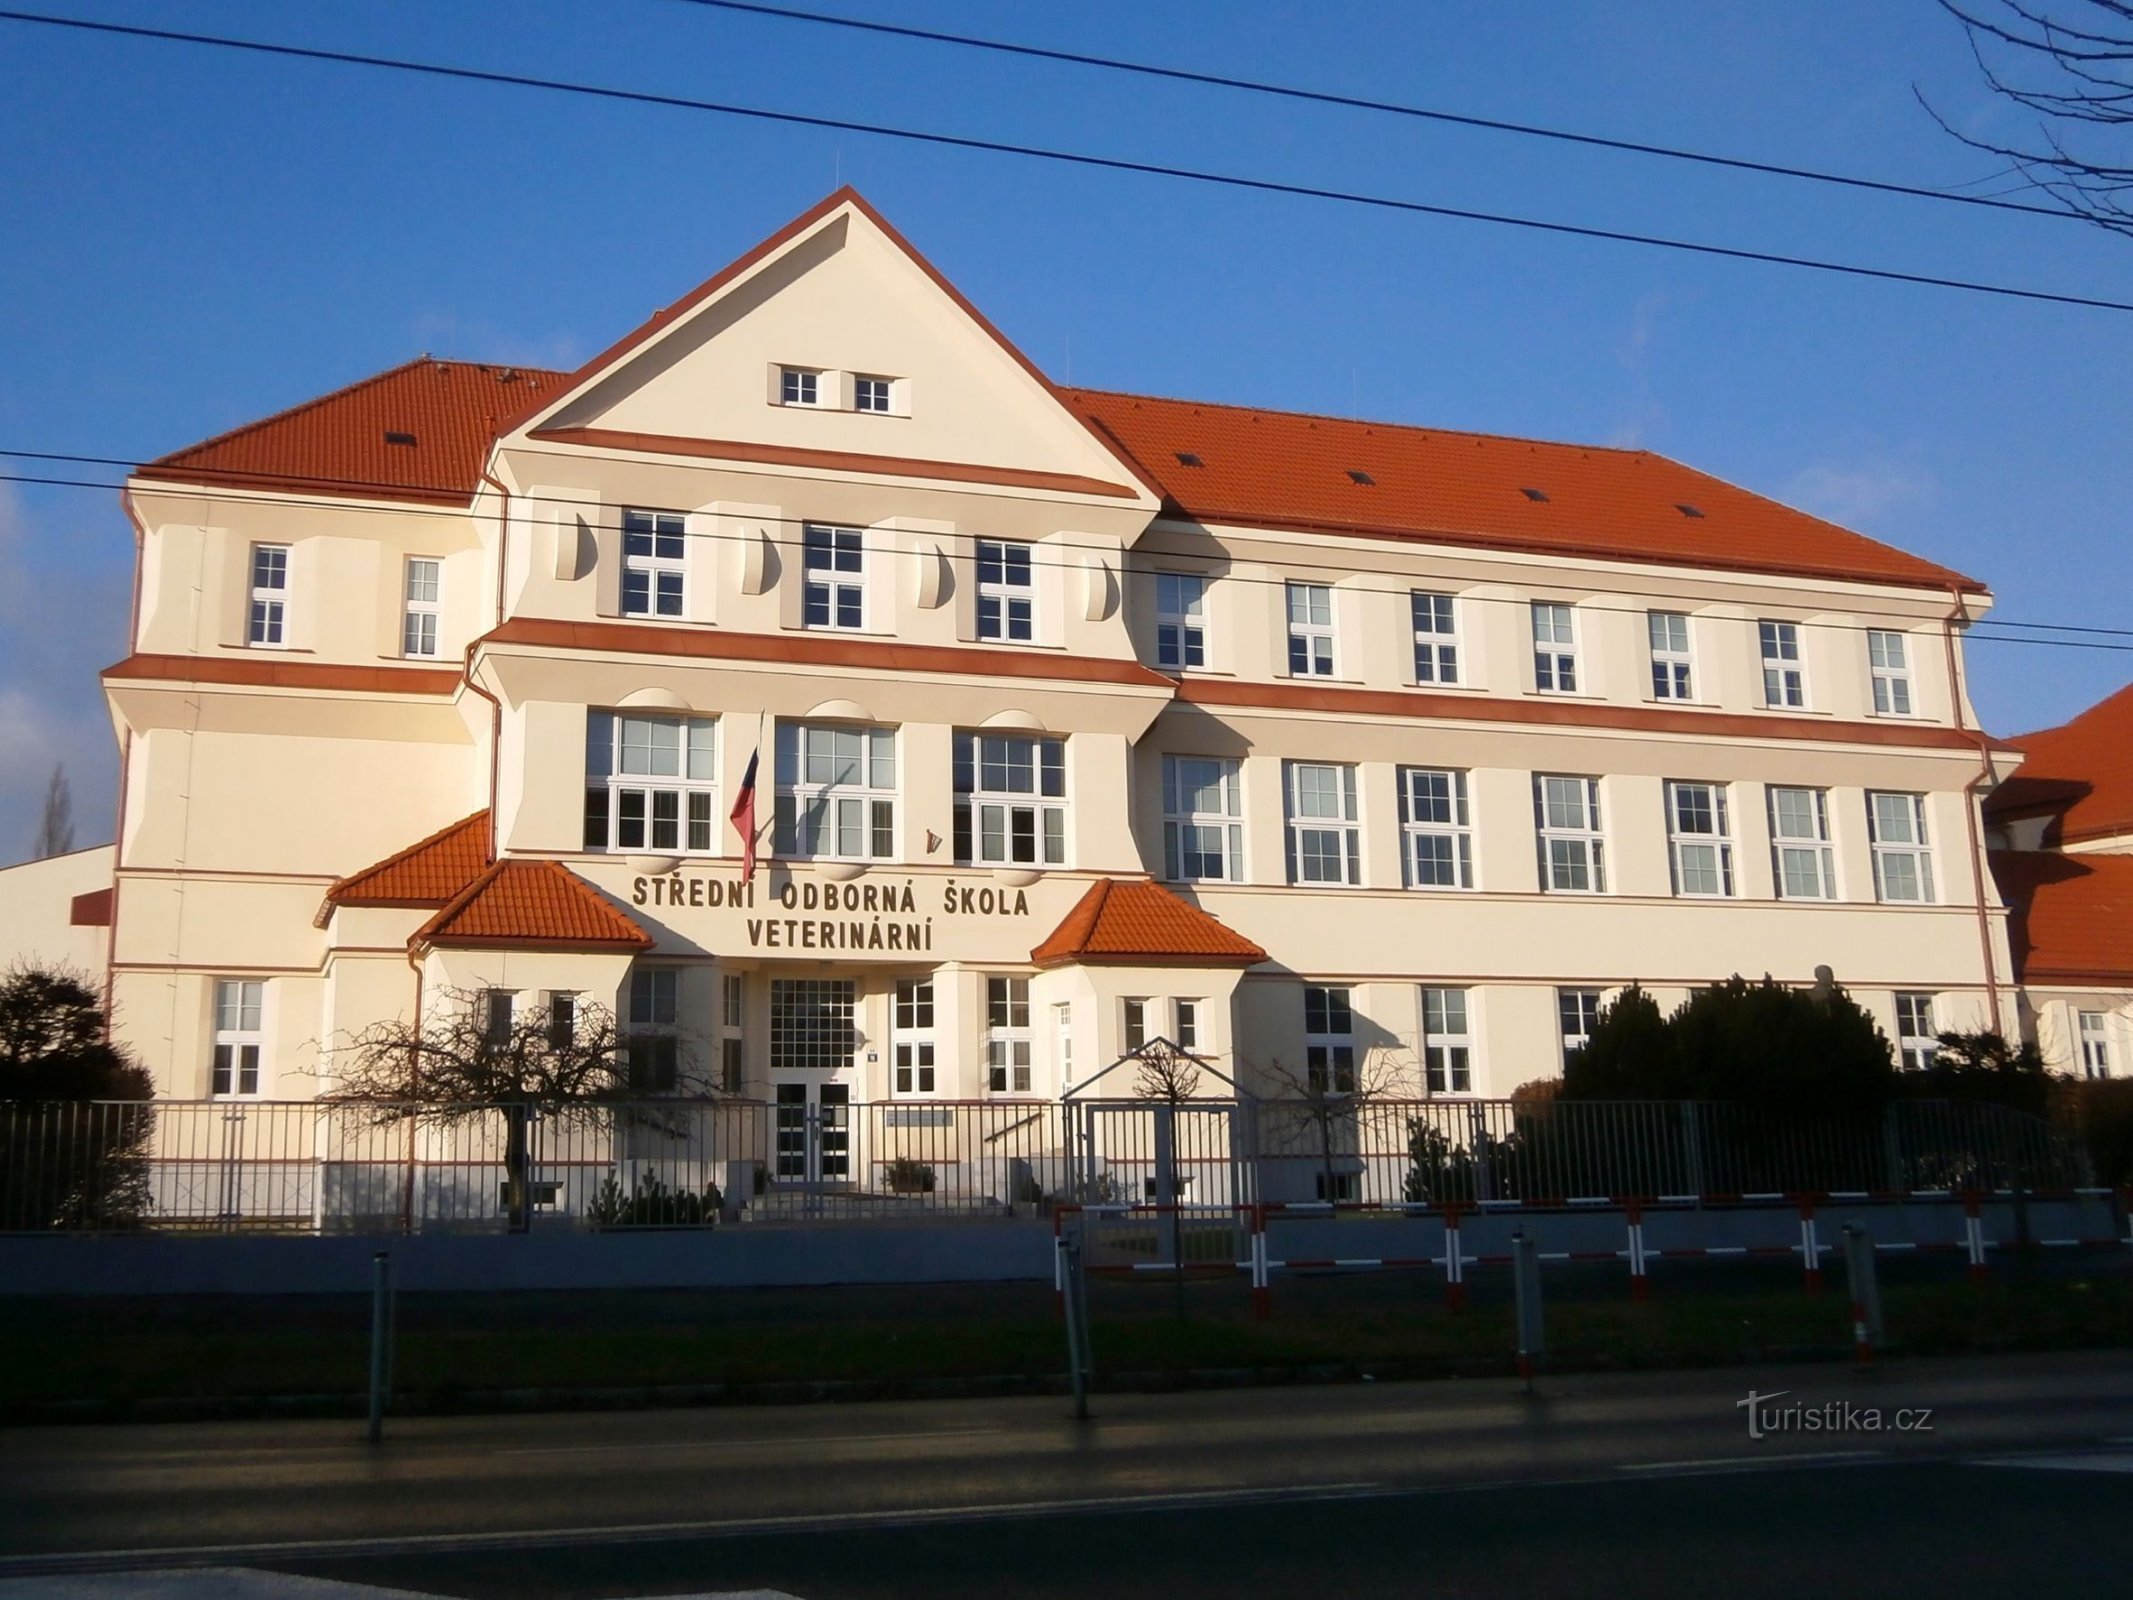 Сучасний вигляд будівлі Професійно-технічної школи економіки в Куклені (Градец Кралове, 4.1.2015 січня XNUMX р.)